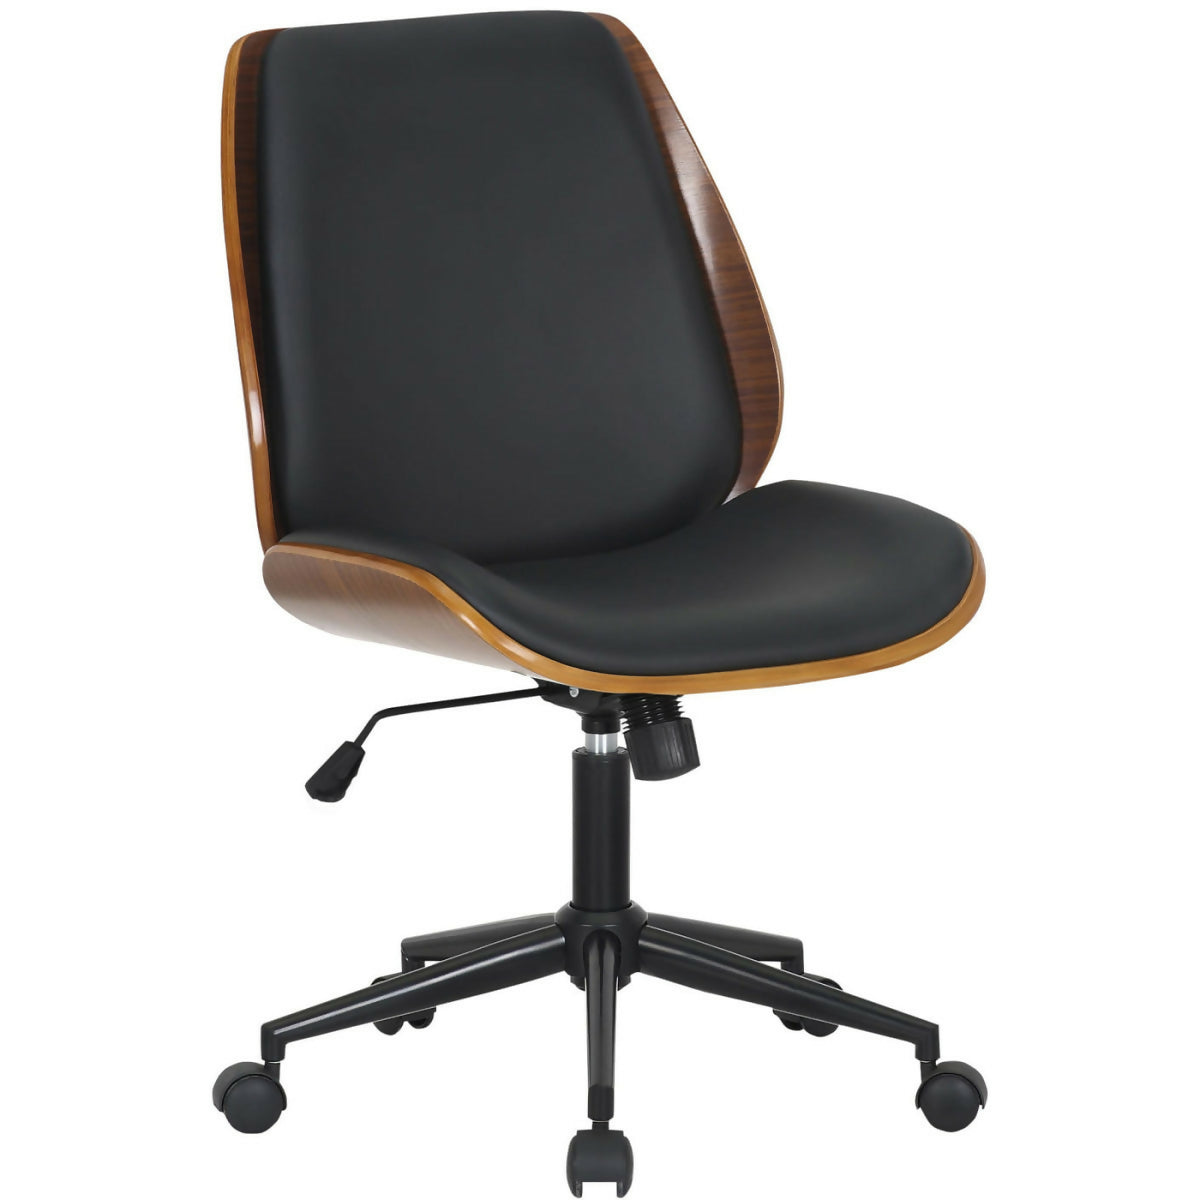 Mitch office chair - Walnut - Black (black foot)